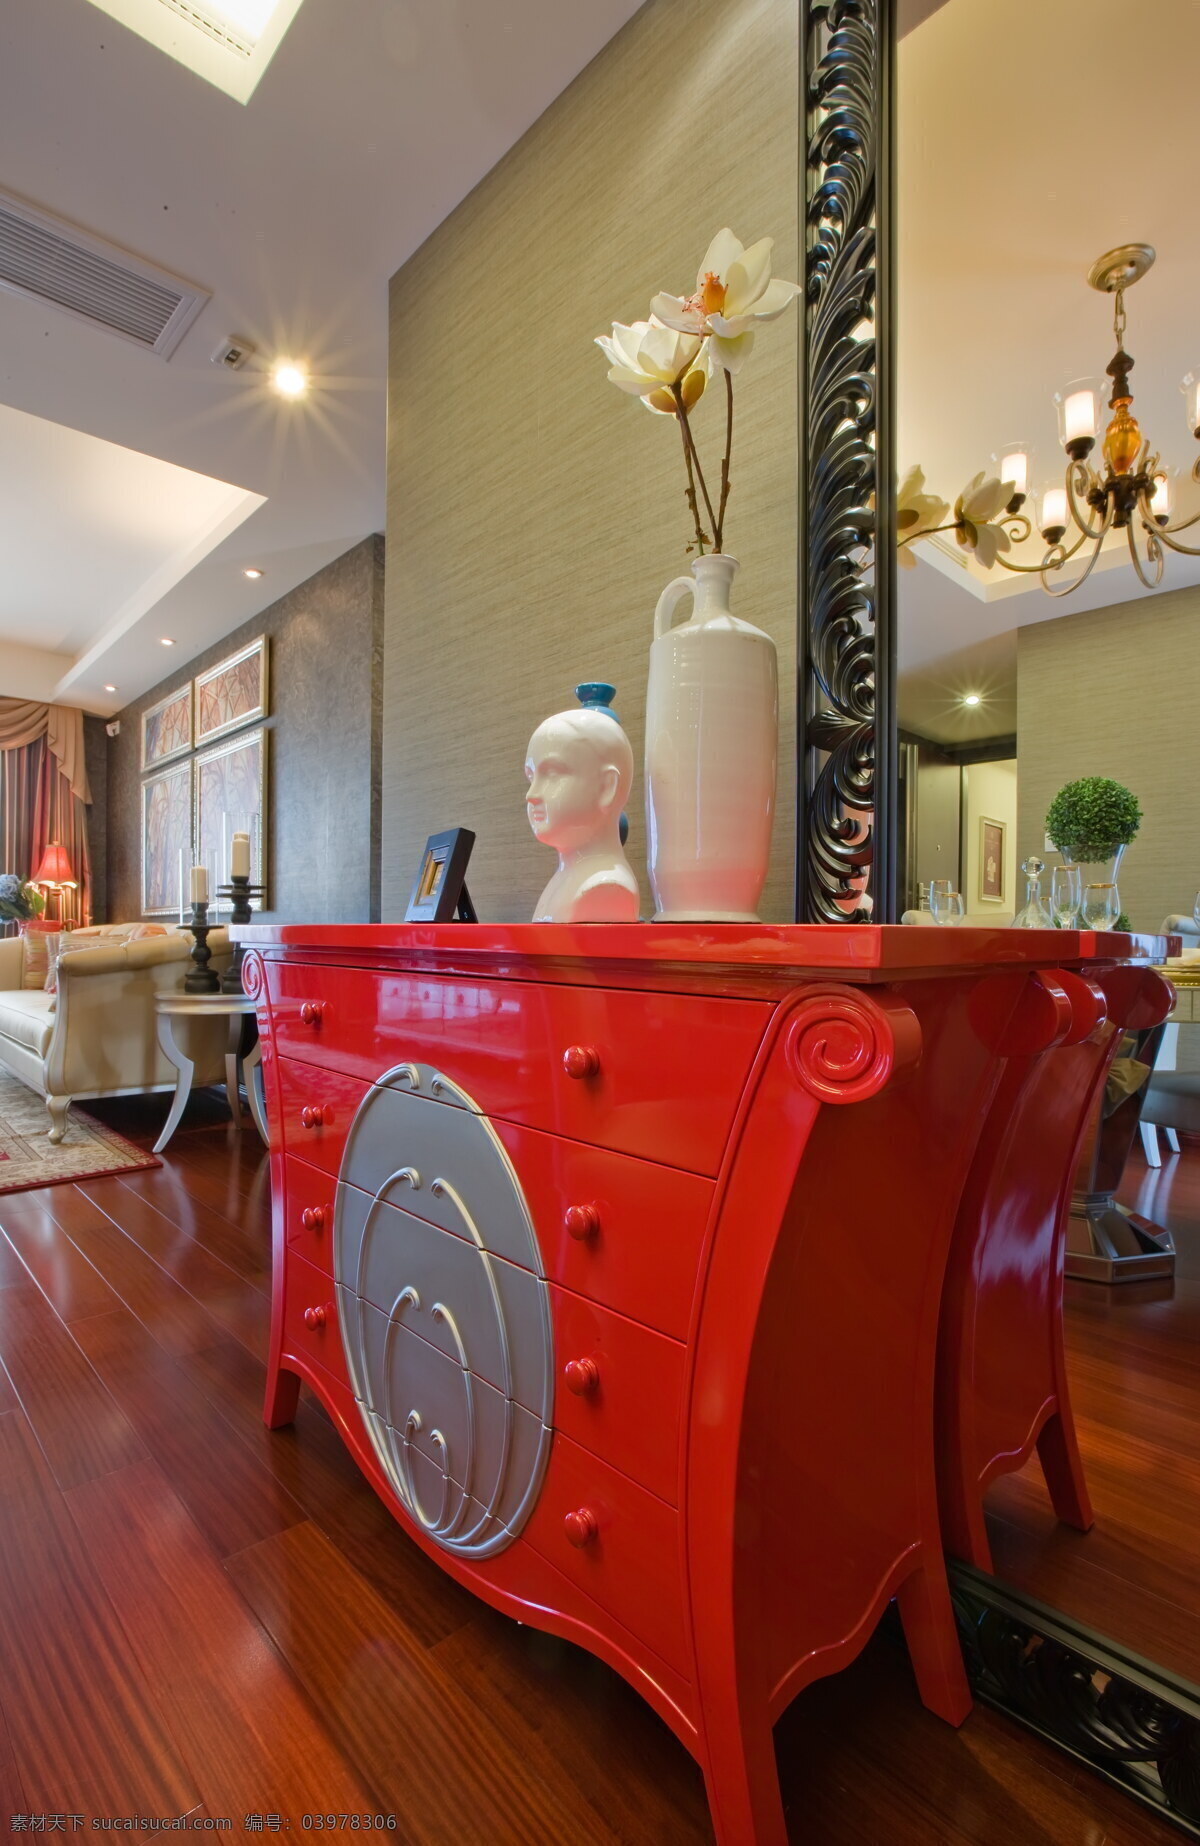 创意 红色 柜子 设计图 家居 家居生活 室内设计 装修 室内 家具 装修设计 环境设计